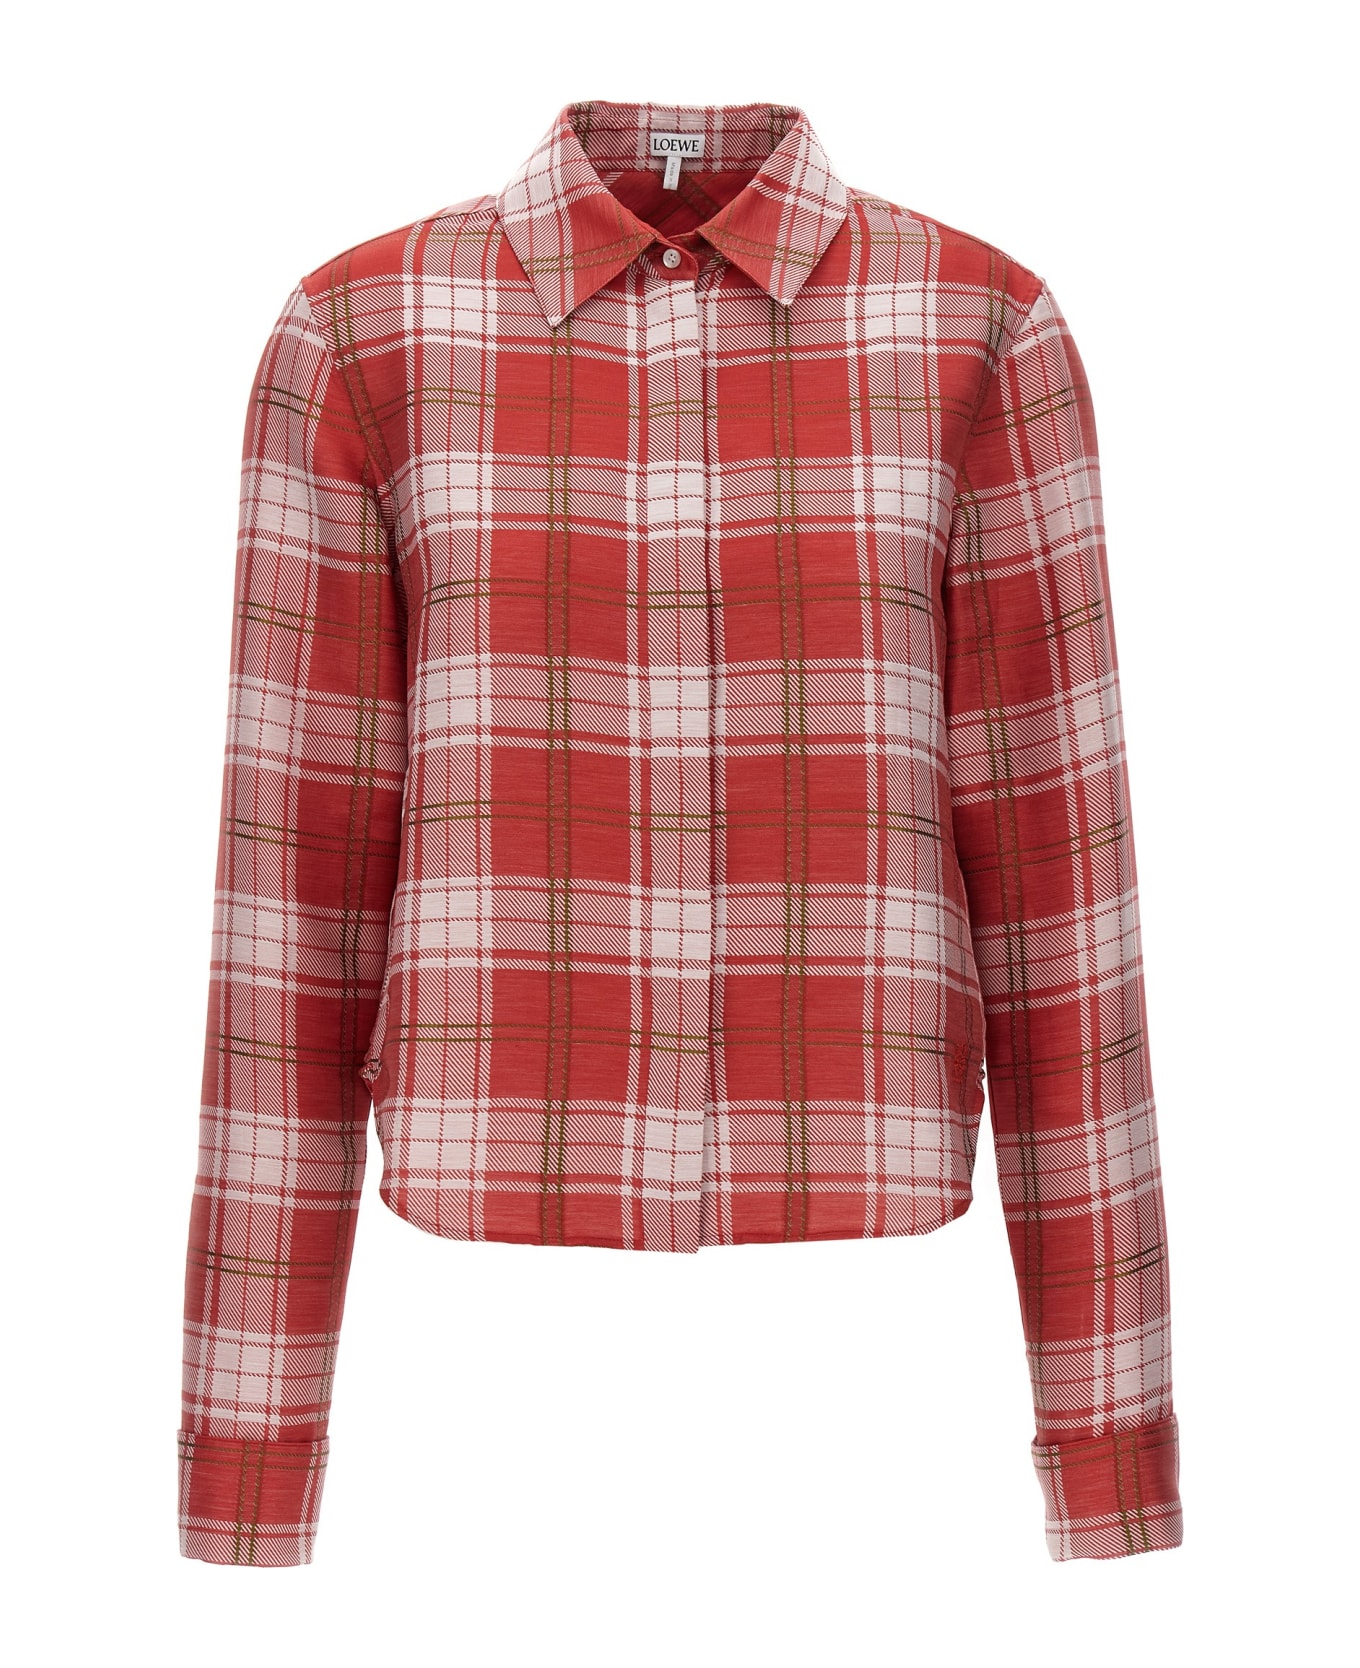 Loewe Check Shirt - Red